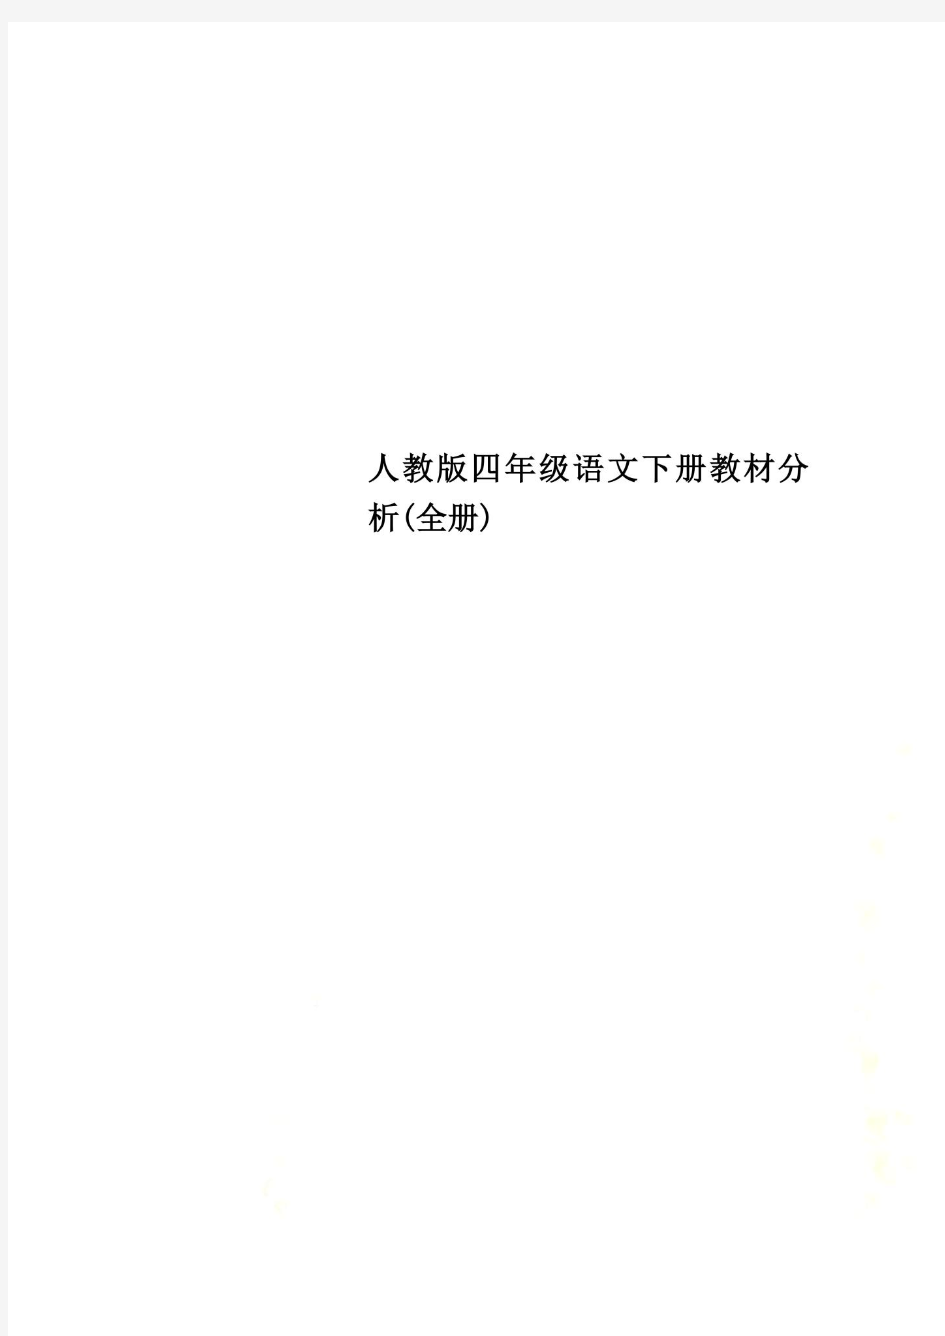 人教版四年级语文下册教材分析(全册)